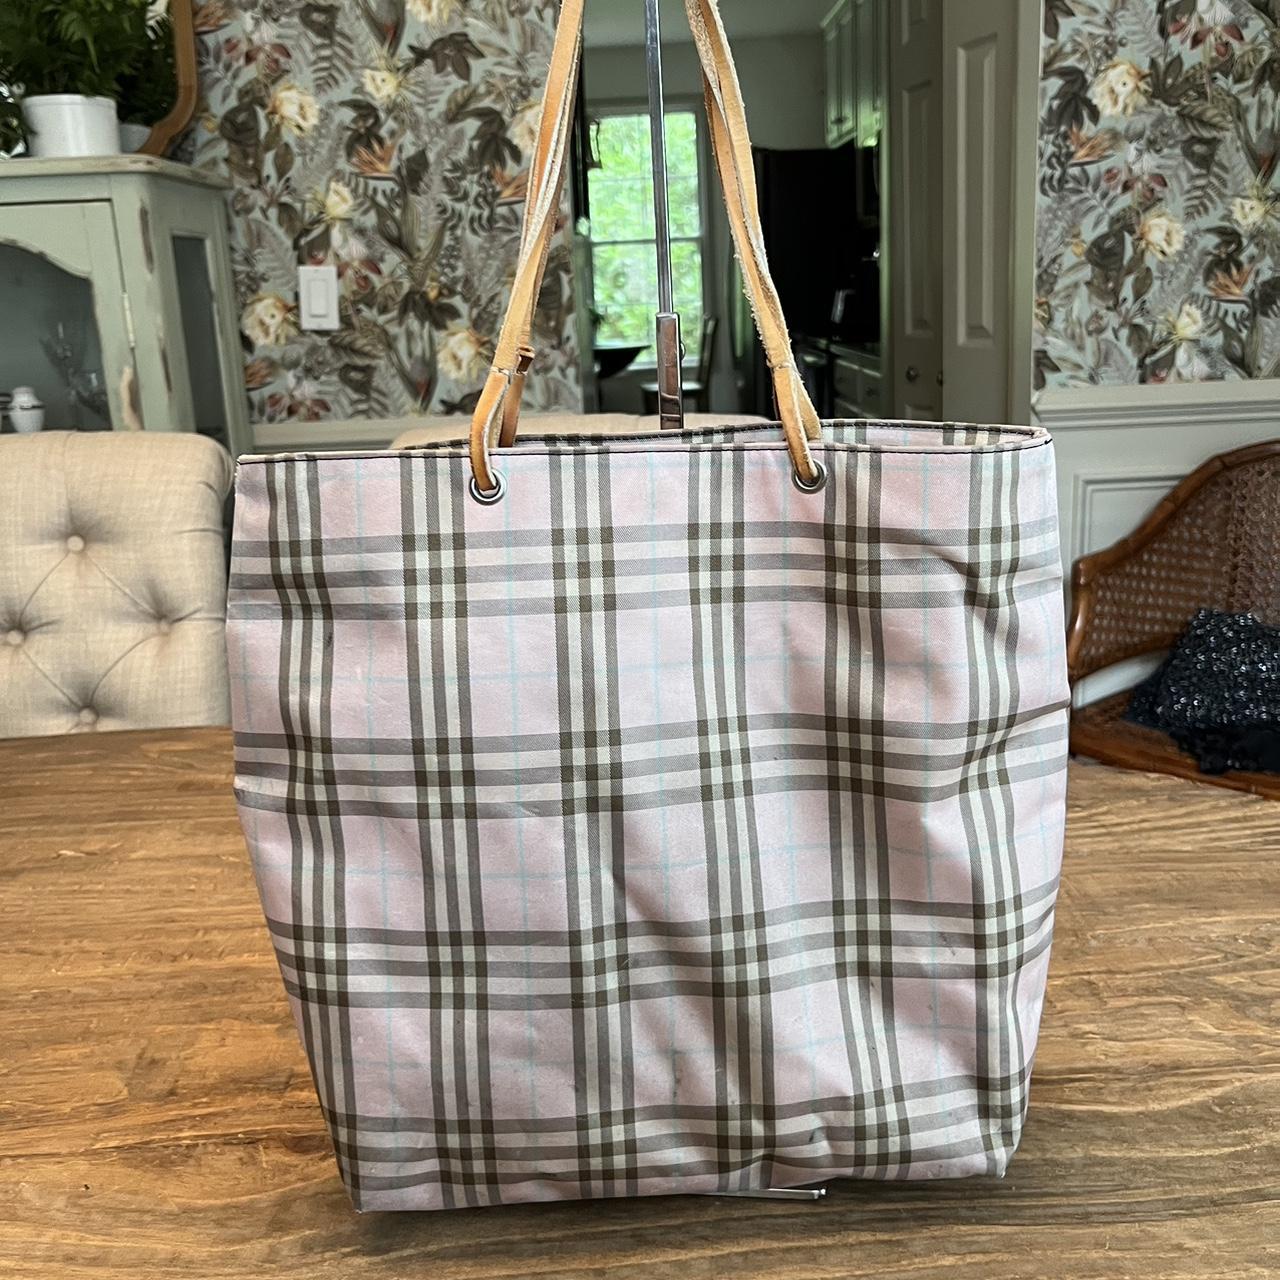 vintage Burberry handbag 👜 authentic + excellent - Depop